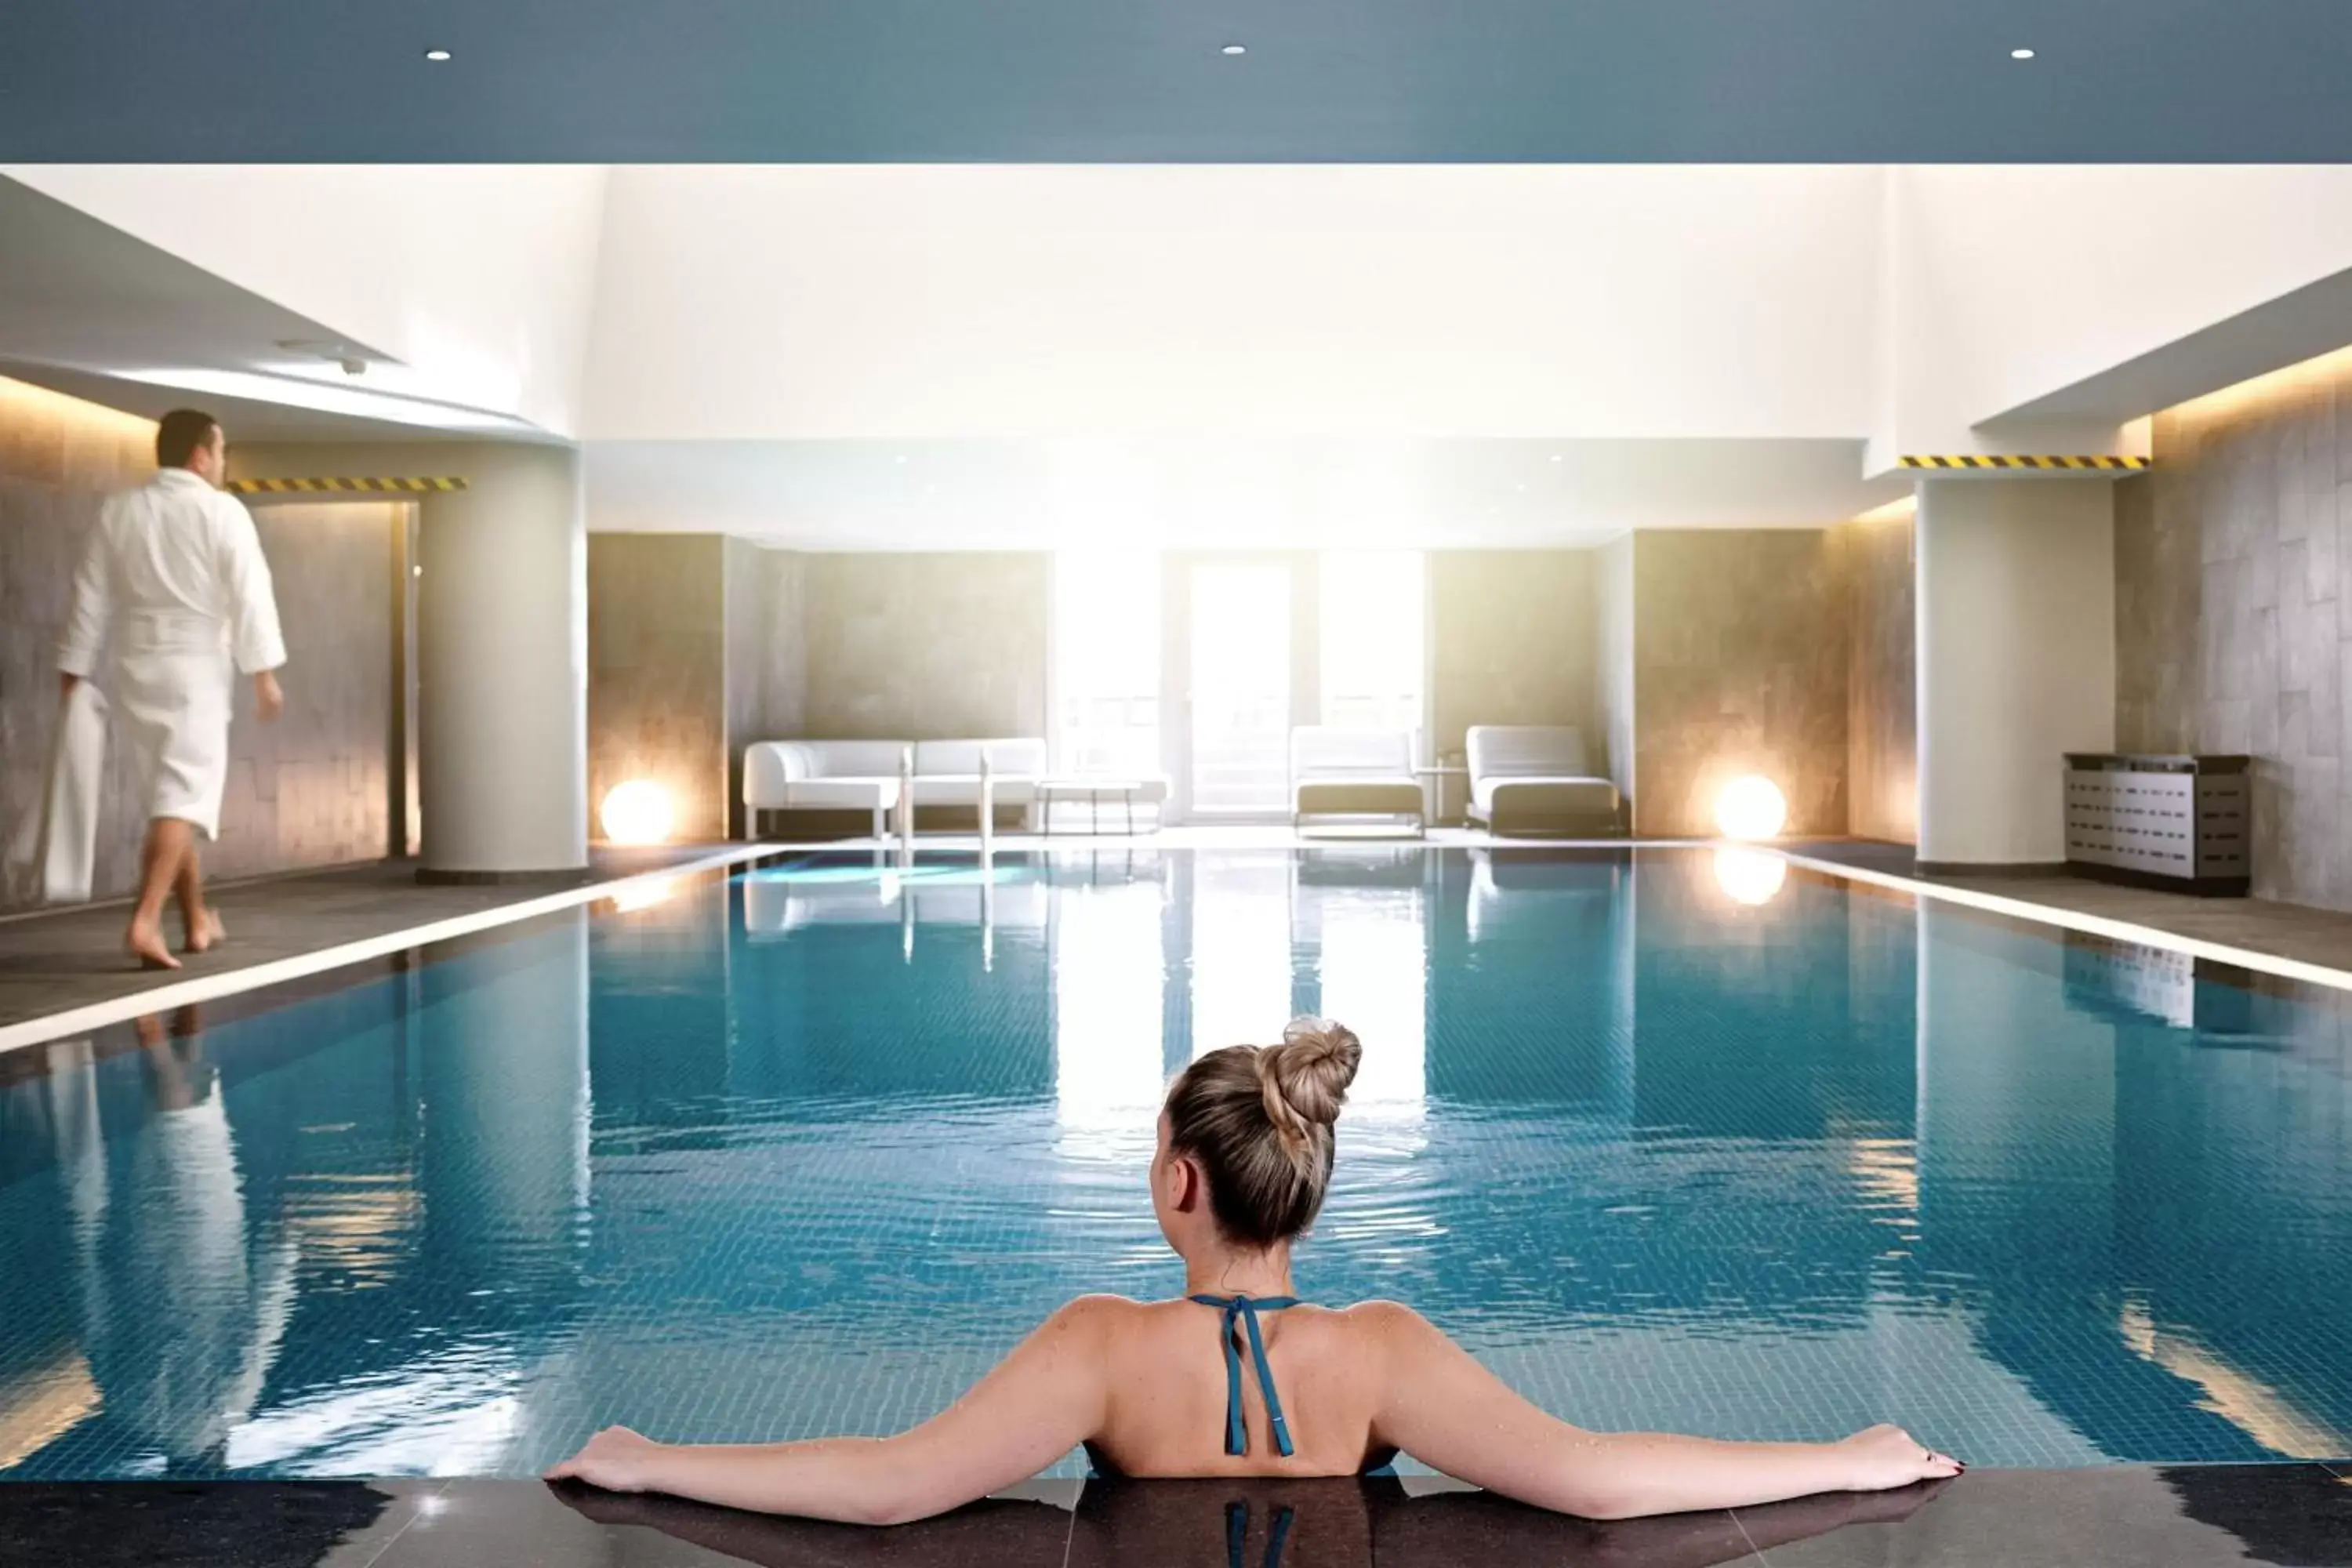 Fitness centre/facilities, Swimming Pool in Sheraton Zagreb Hotel